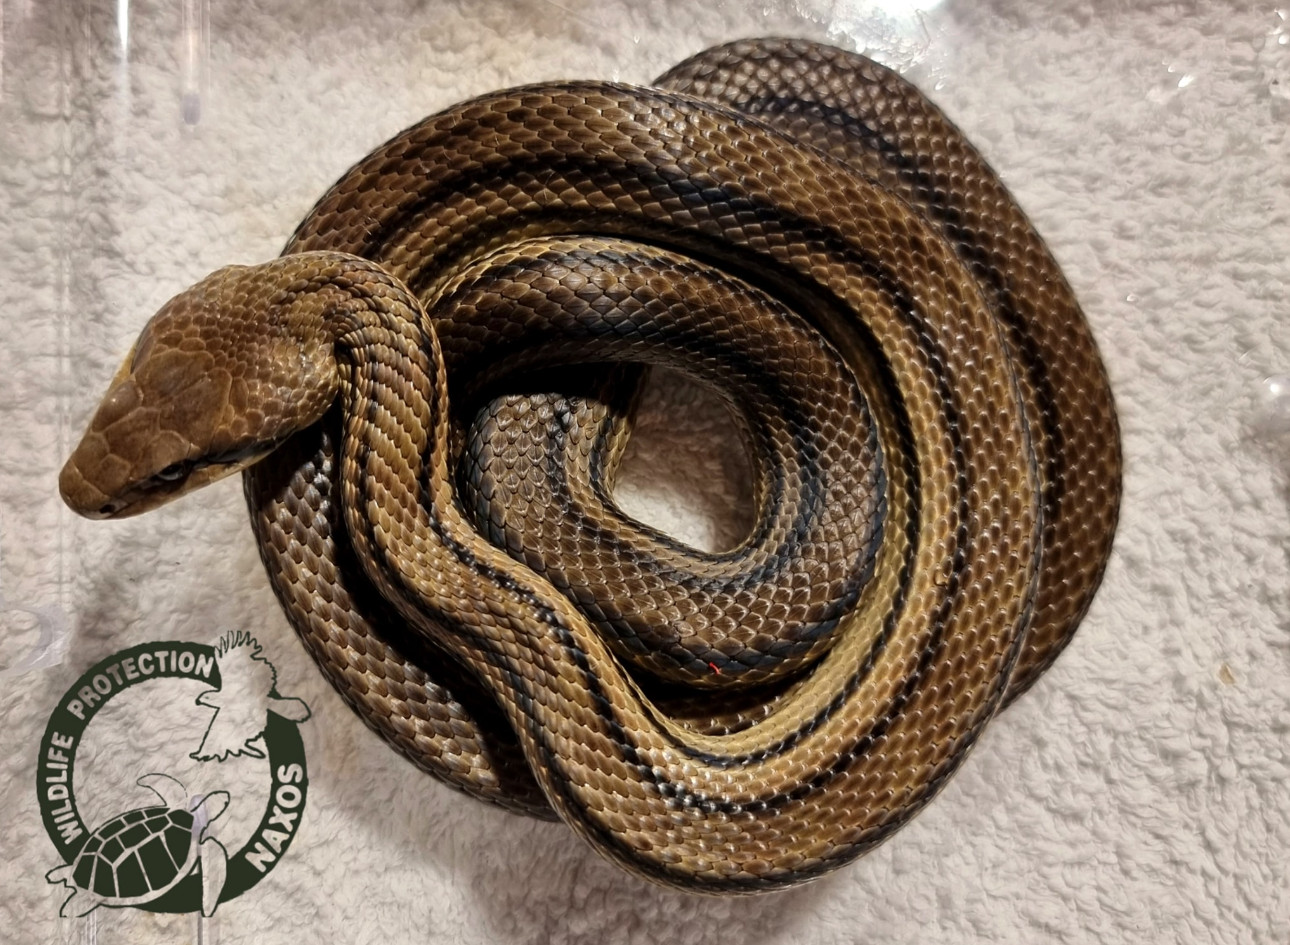 Νάξος: Μεγάλο φίδι εγκλωβίστηκε σε σπίτι και απαιτήθηκε η επέμβαση ειδικών στην άγρια ζωή